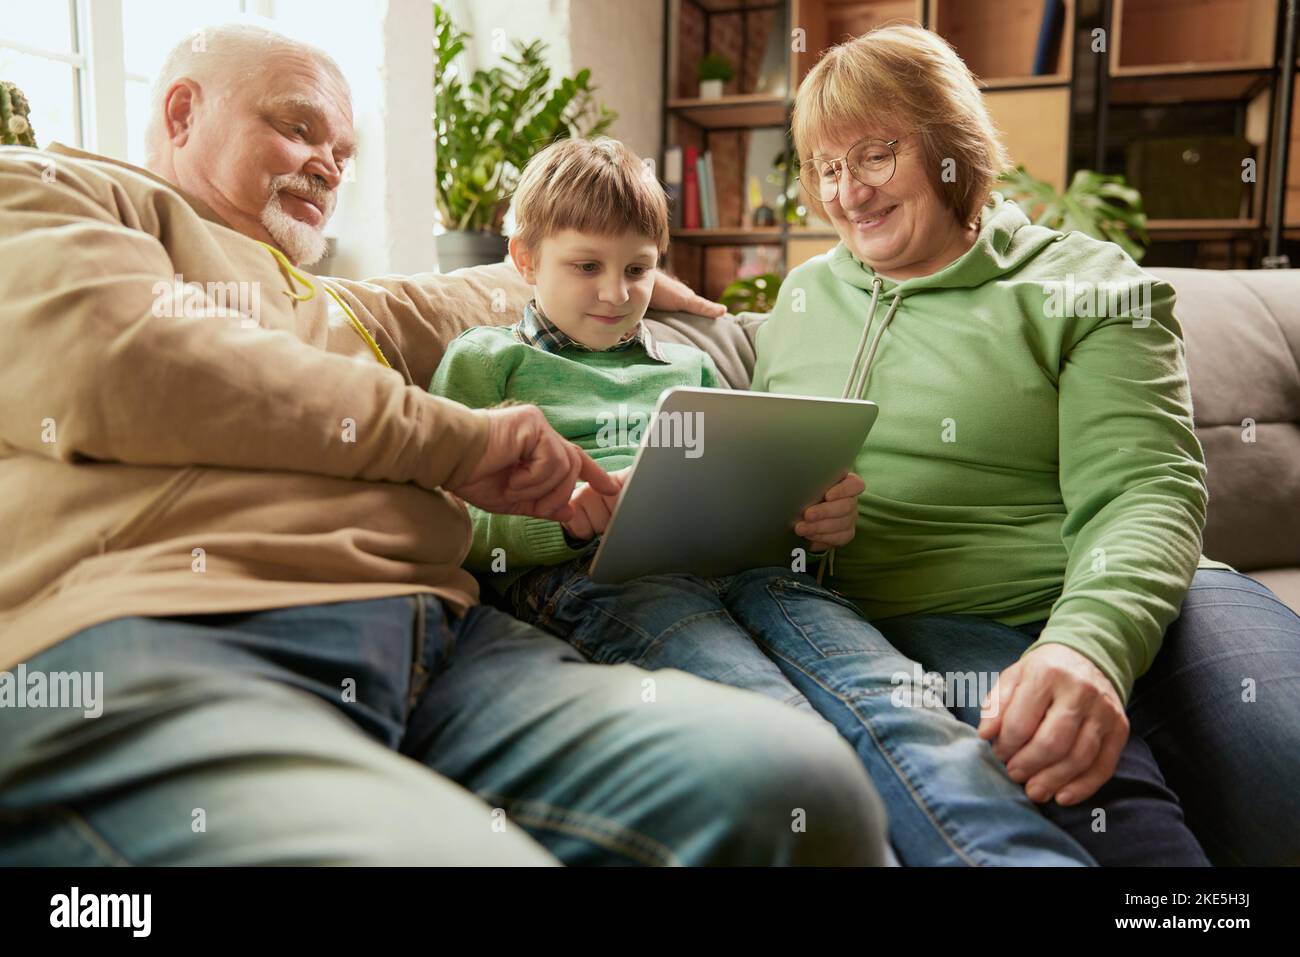 Glückliche, freundliche Familie, Großeltern und Enkel sitzen auf dem Sofa und verbringen Zeit miteinander, mit modernen Geräten, reden, studieren Stockfoto